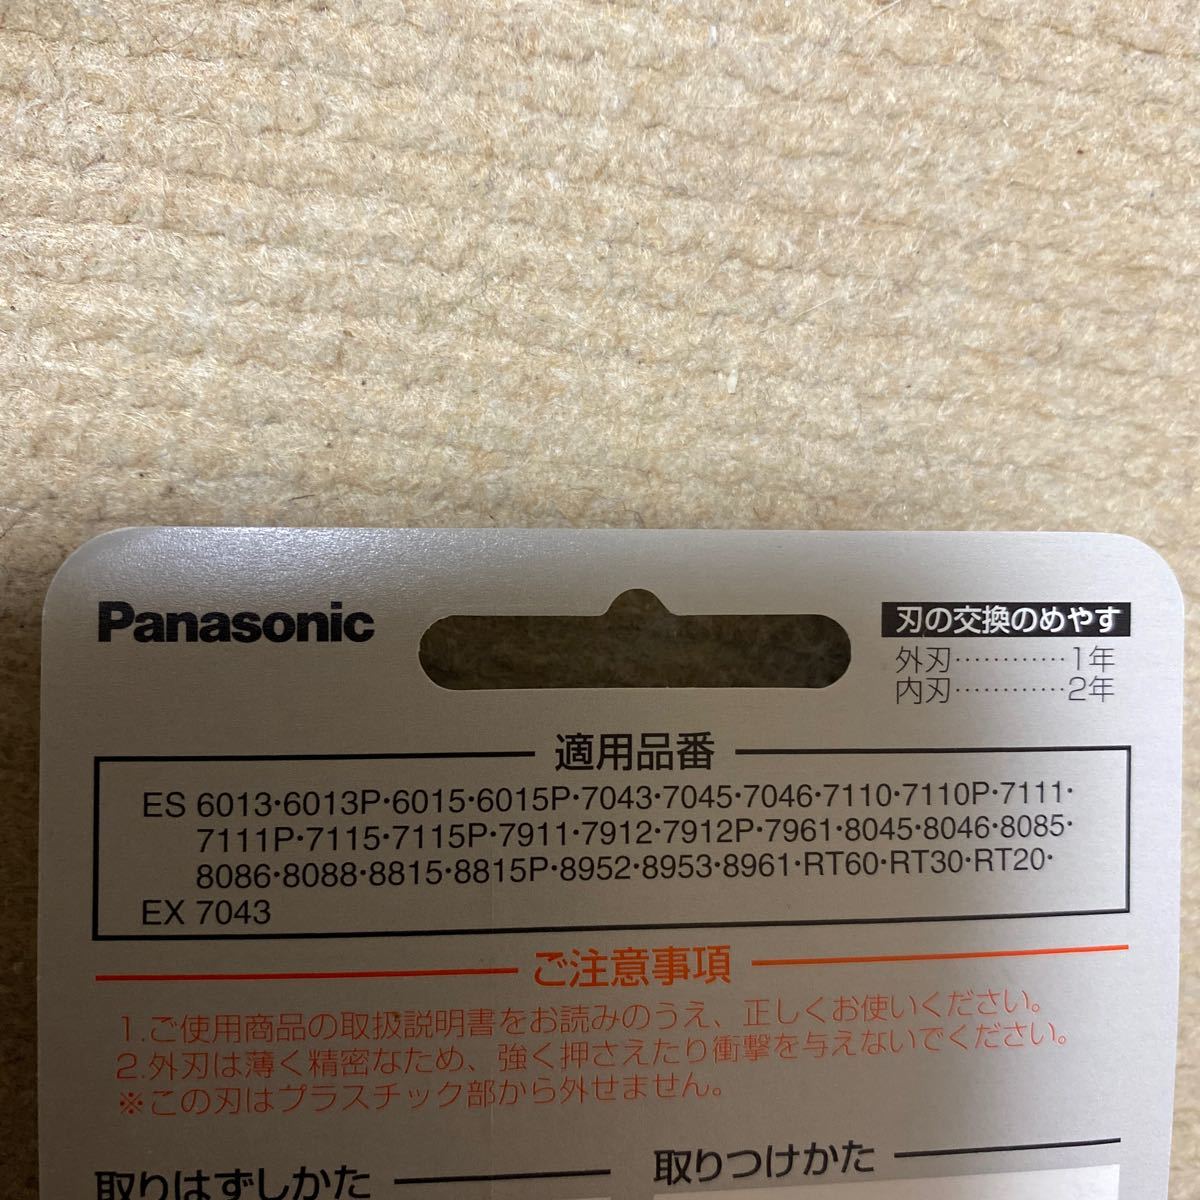 * Panasonic National Panasonic linear * система smoother бритва вне лезвие ES9085 4 шт совместно не использовался нераспечатанный *